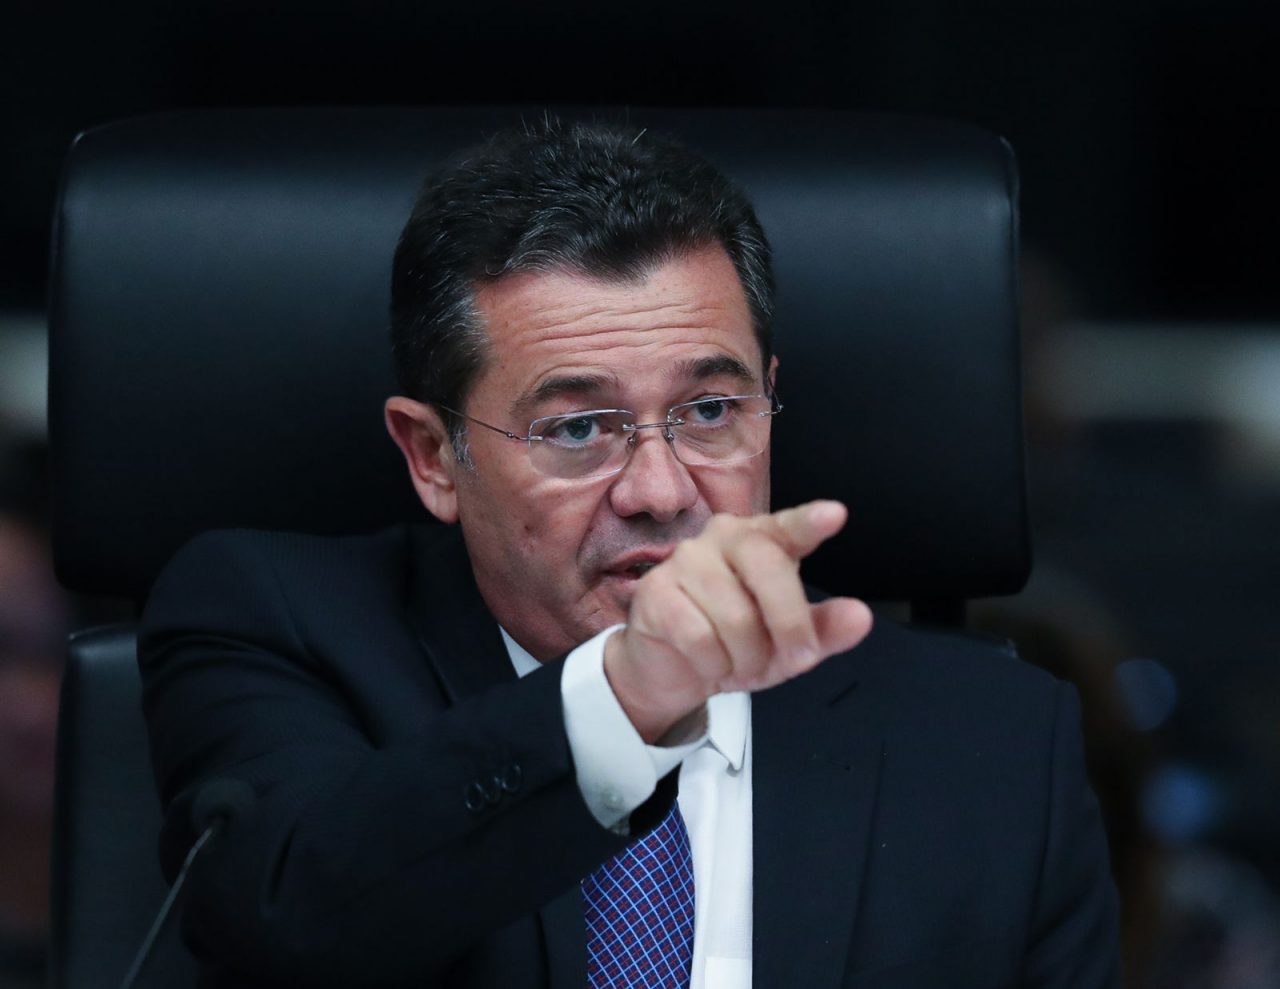 WhatsApp Image 2022 05 19 at 10.31.00 scaled - Ministro paraibano Vital do Rêgo apontou seis ilegalidades em seu voto contra privatização da Eletrobras no TCU